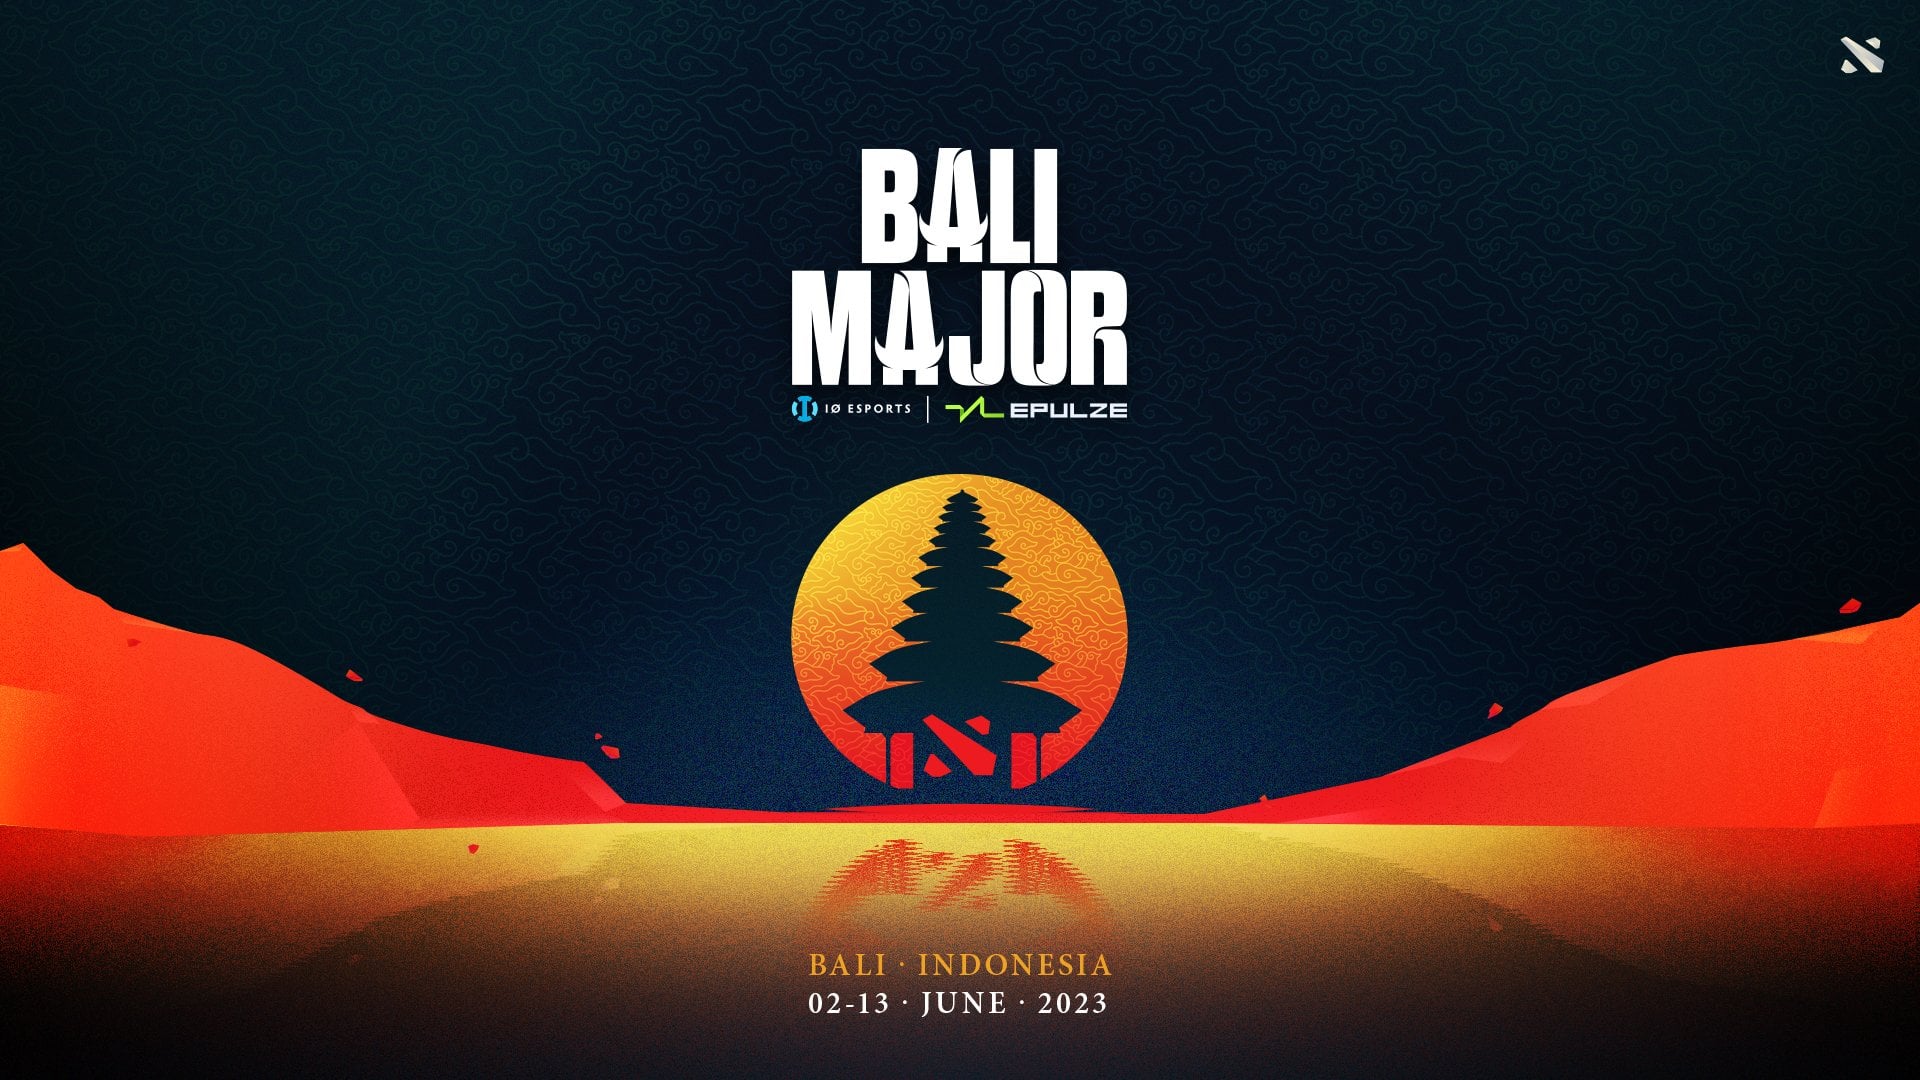 Англоязычная студия освещения The Bali Major 2023 подтвердила блокировку на YouTube